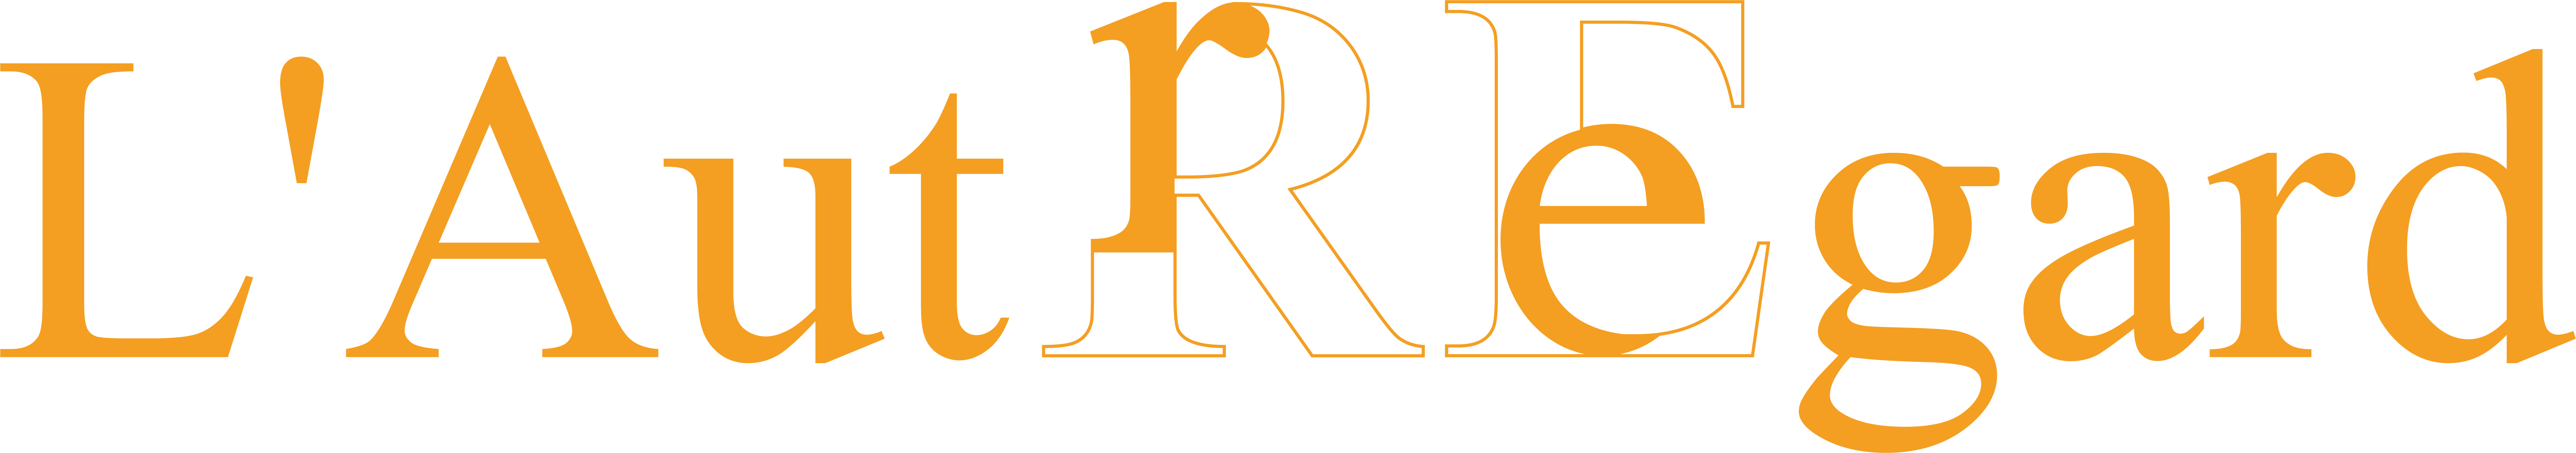 logo, lautregard